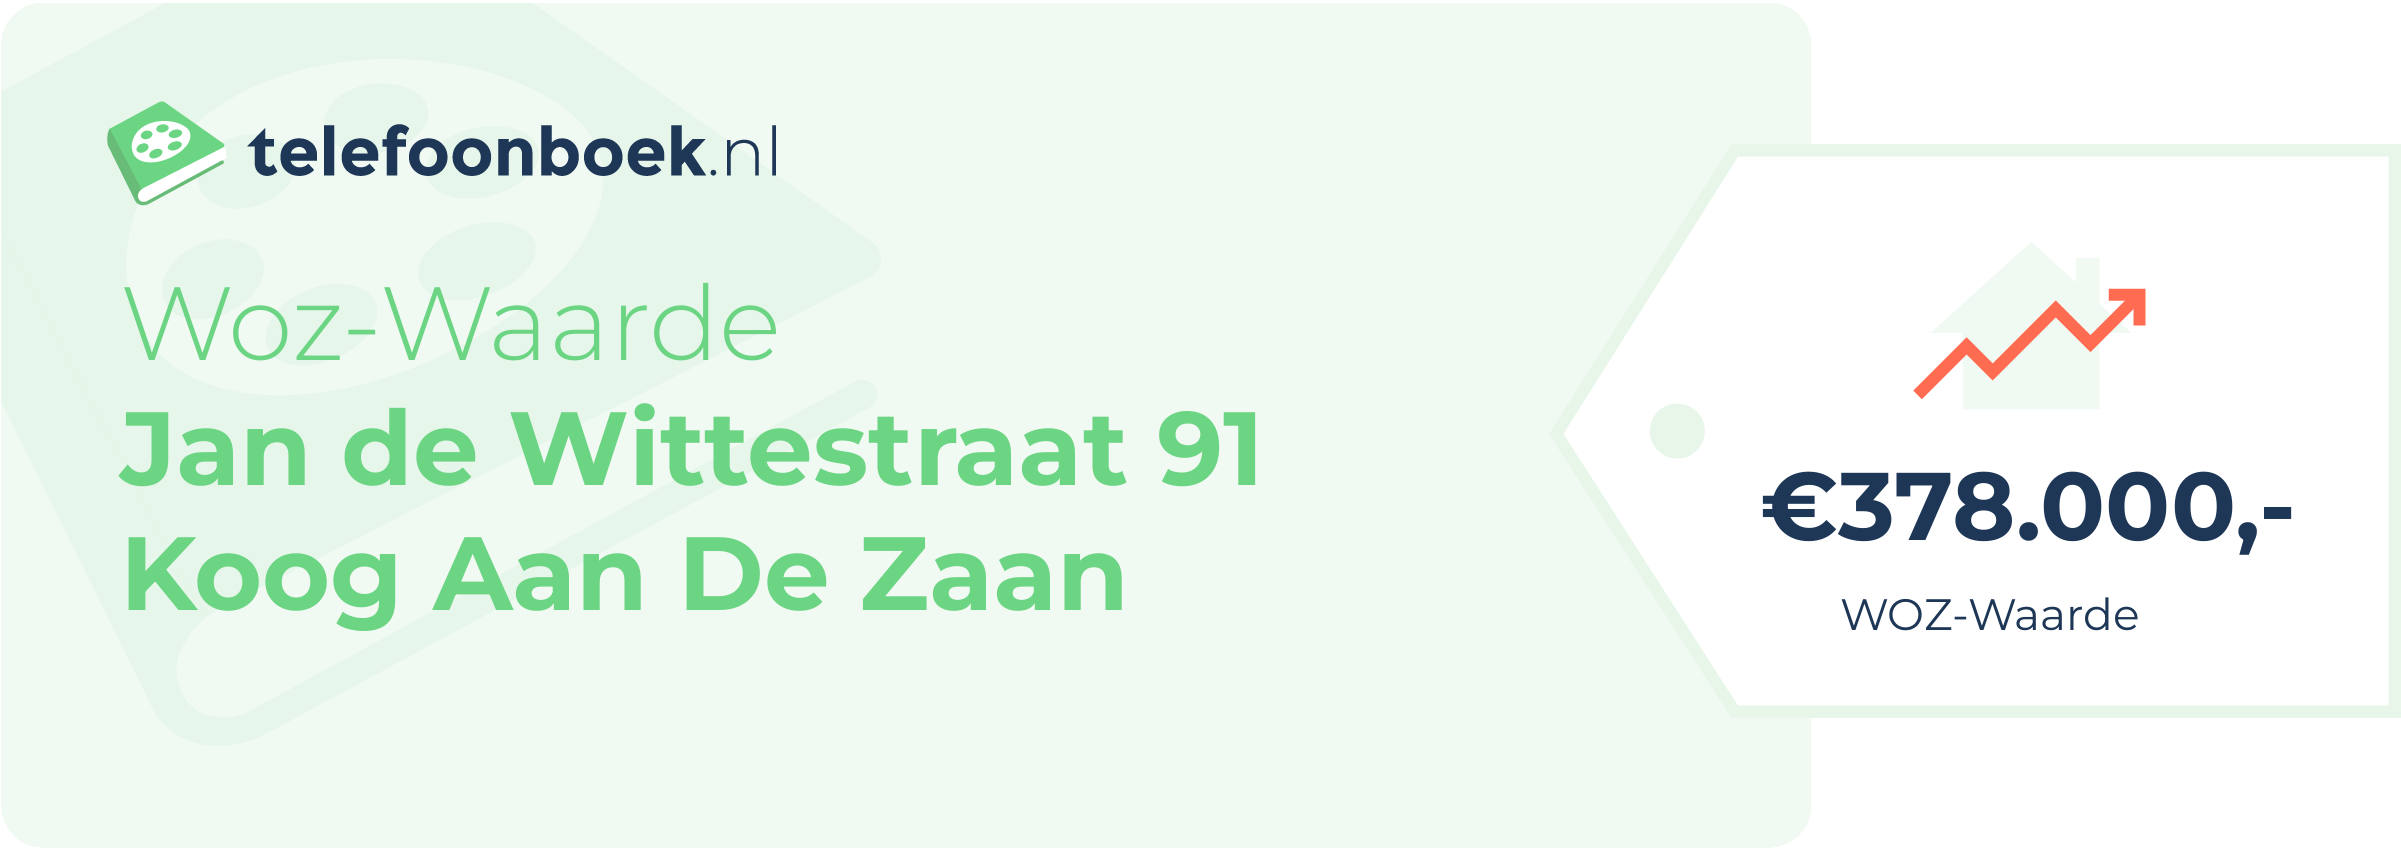 WOZ-waarde Jan De Wittestraat 91 Koog Aan De Zaan